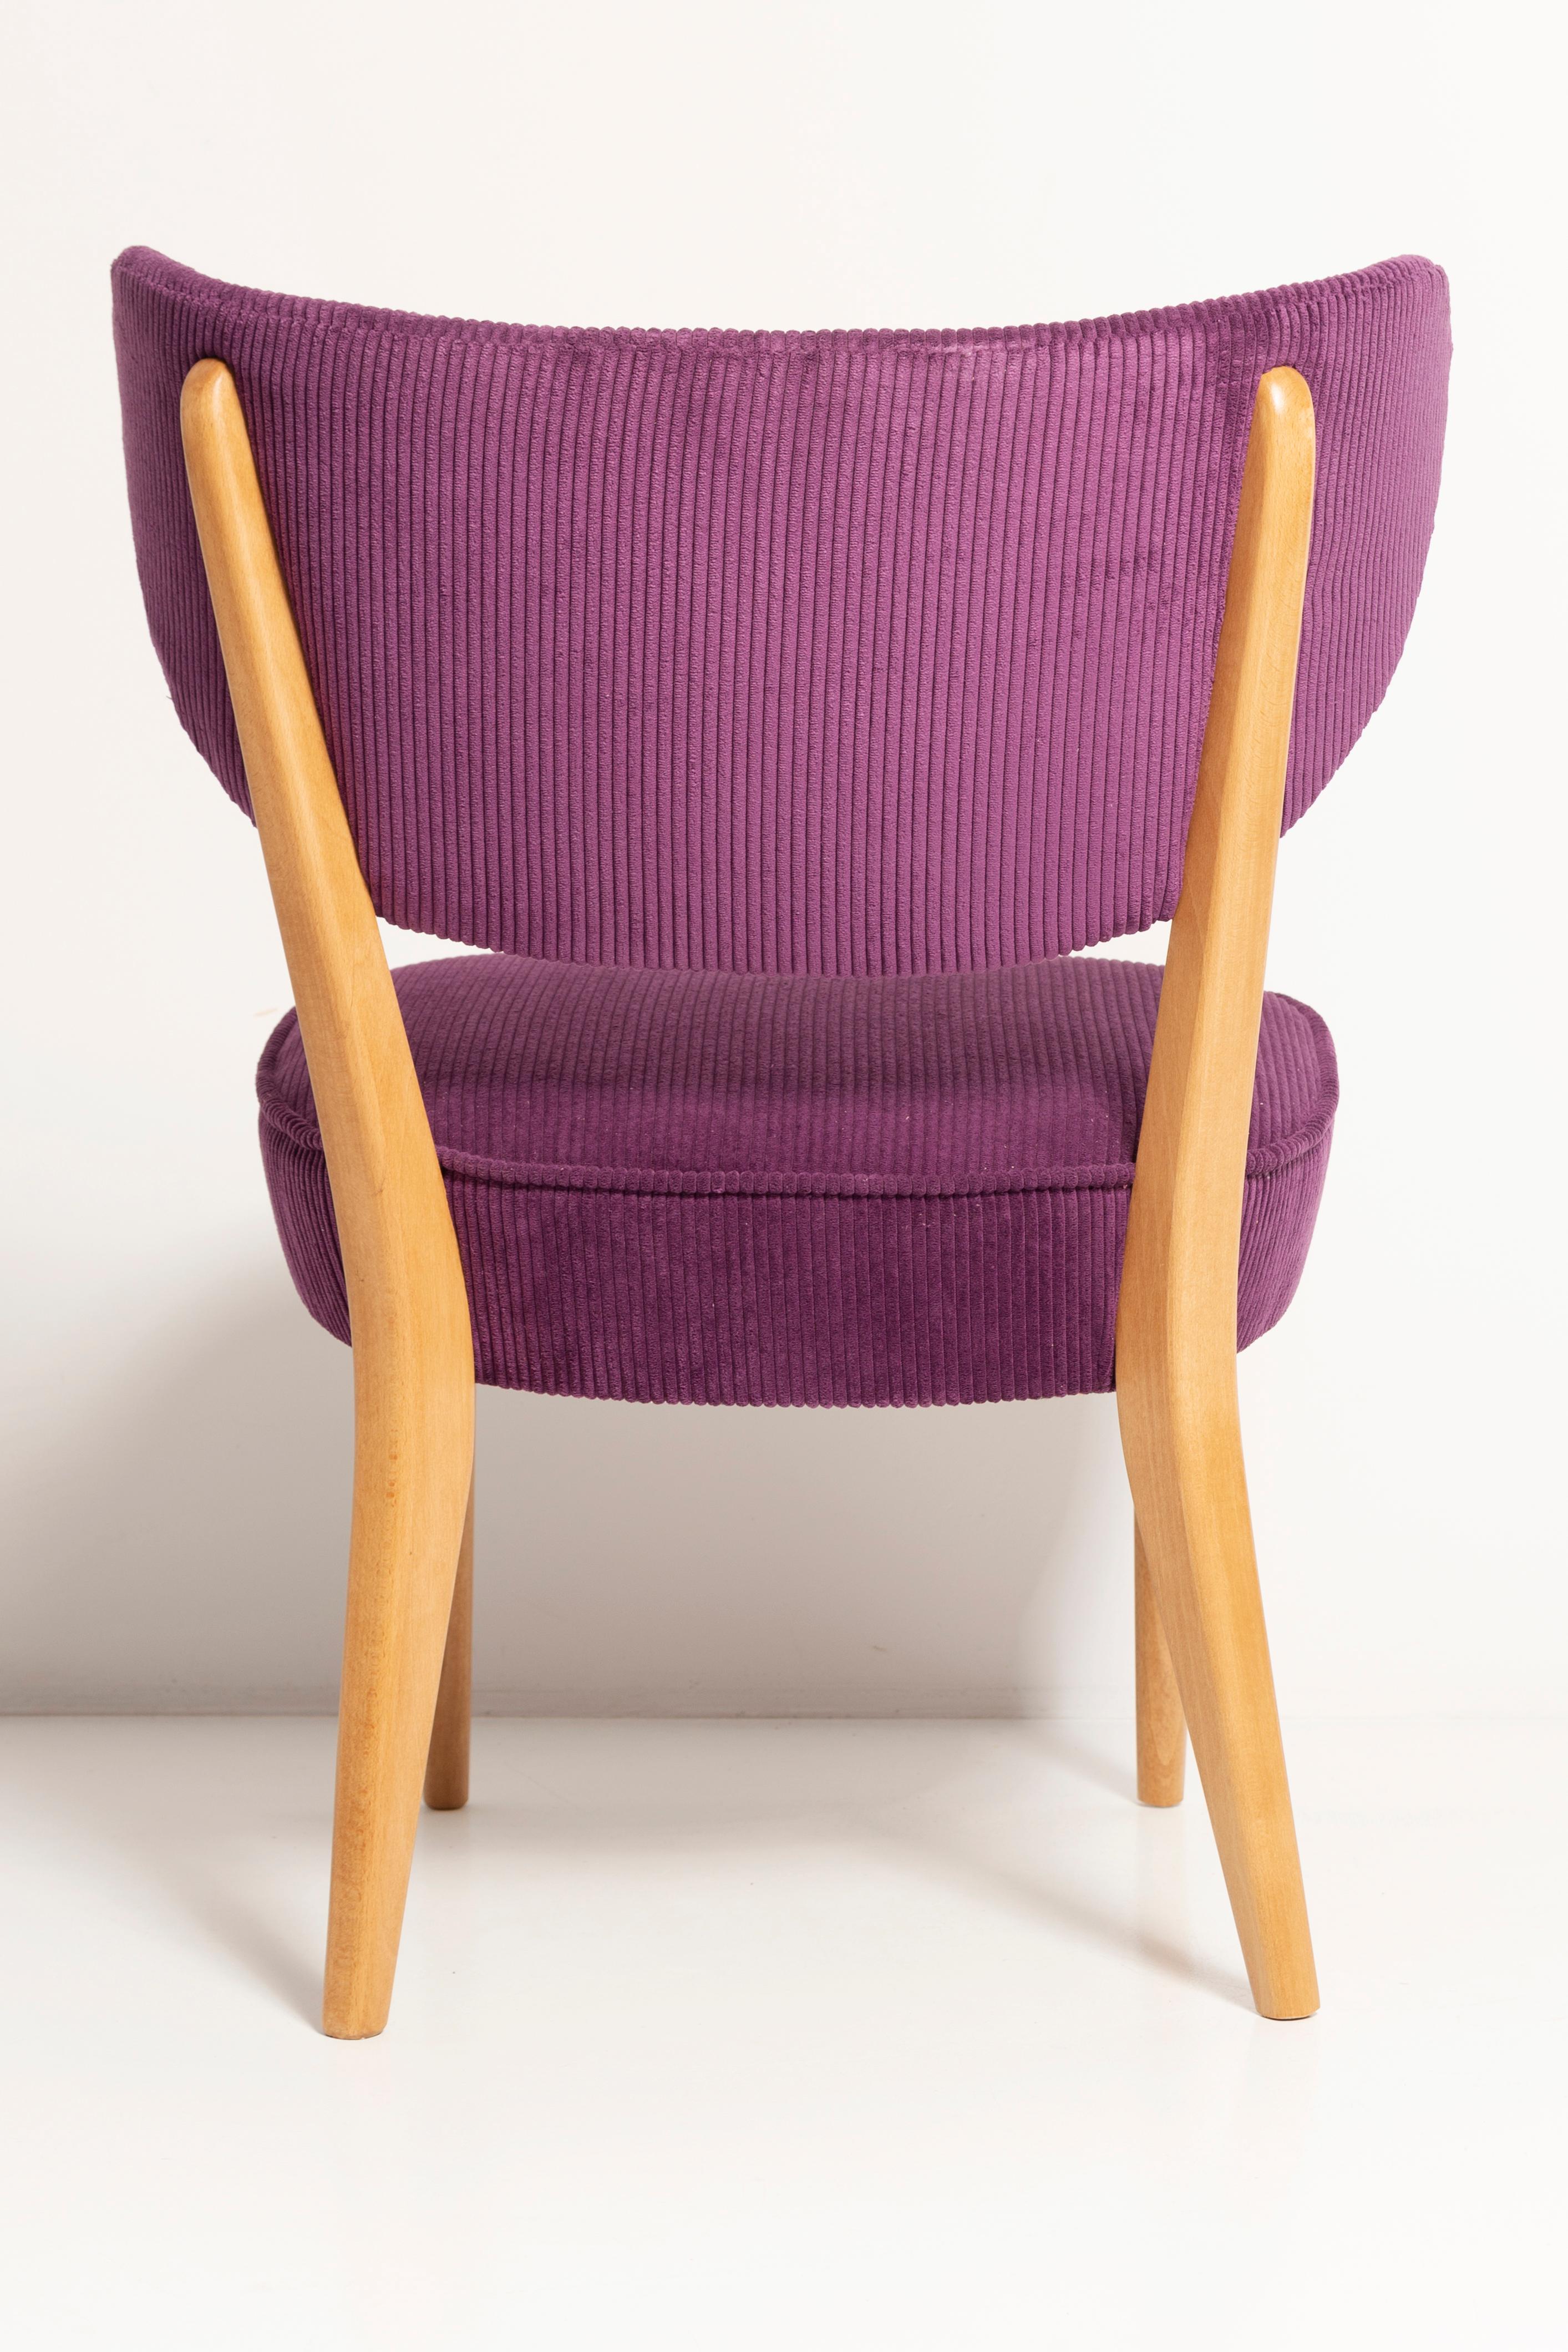 Bouclé Midcentury Style Violet Velvet Club Chair, by Vintola Studio, Europe, Poland For Sale